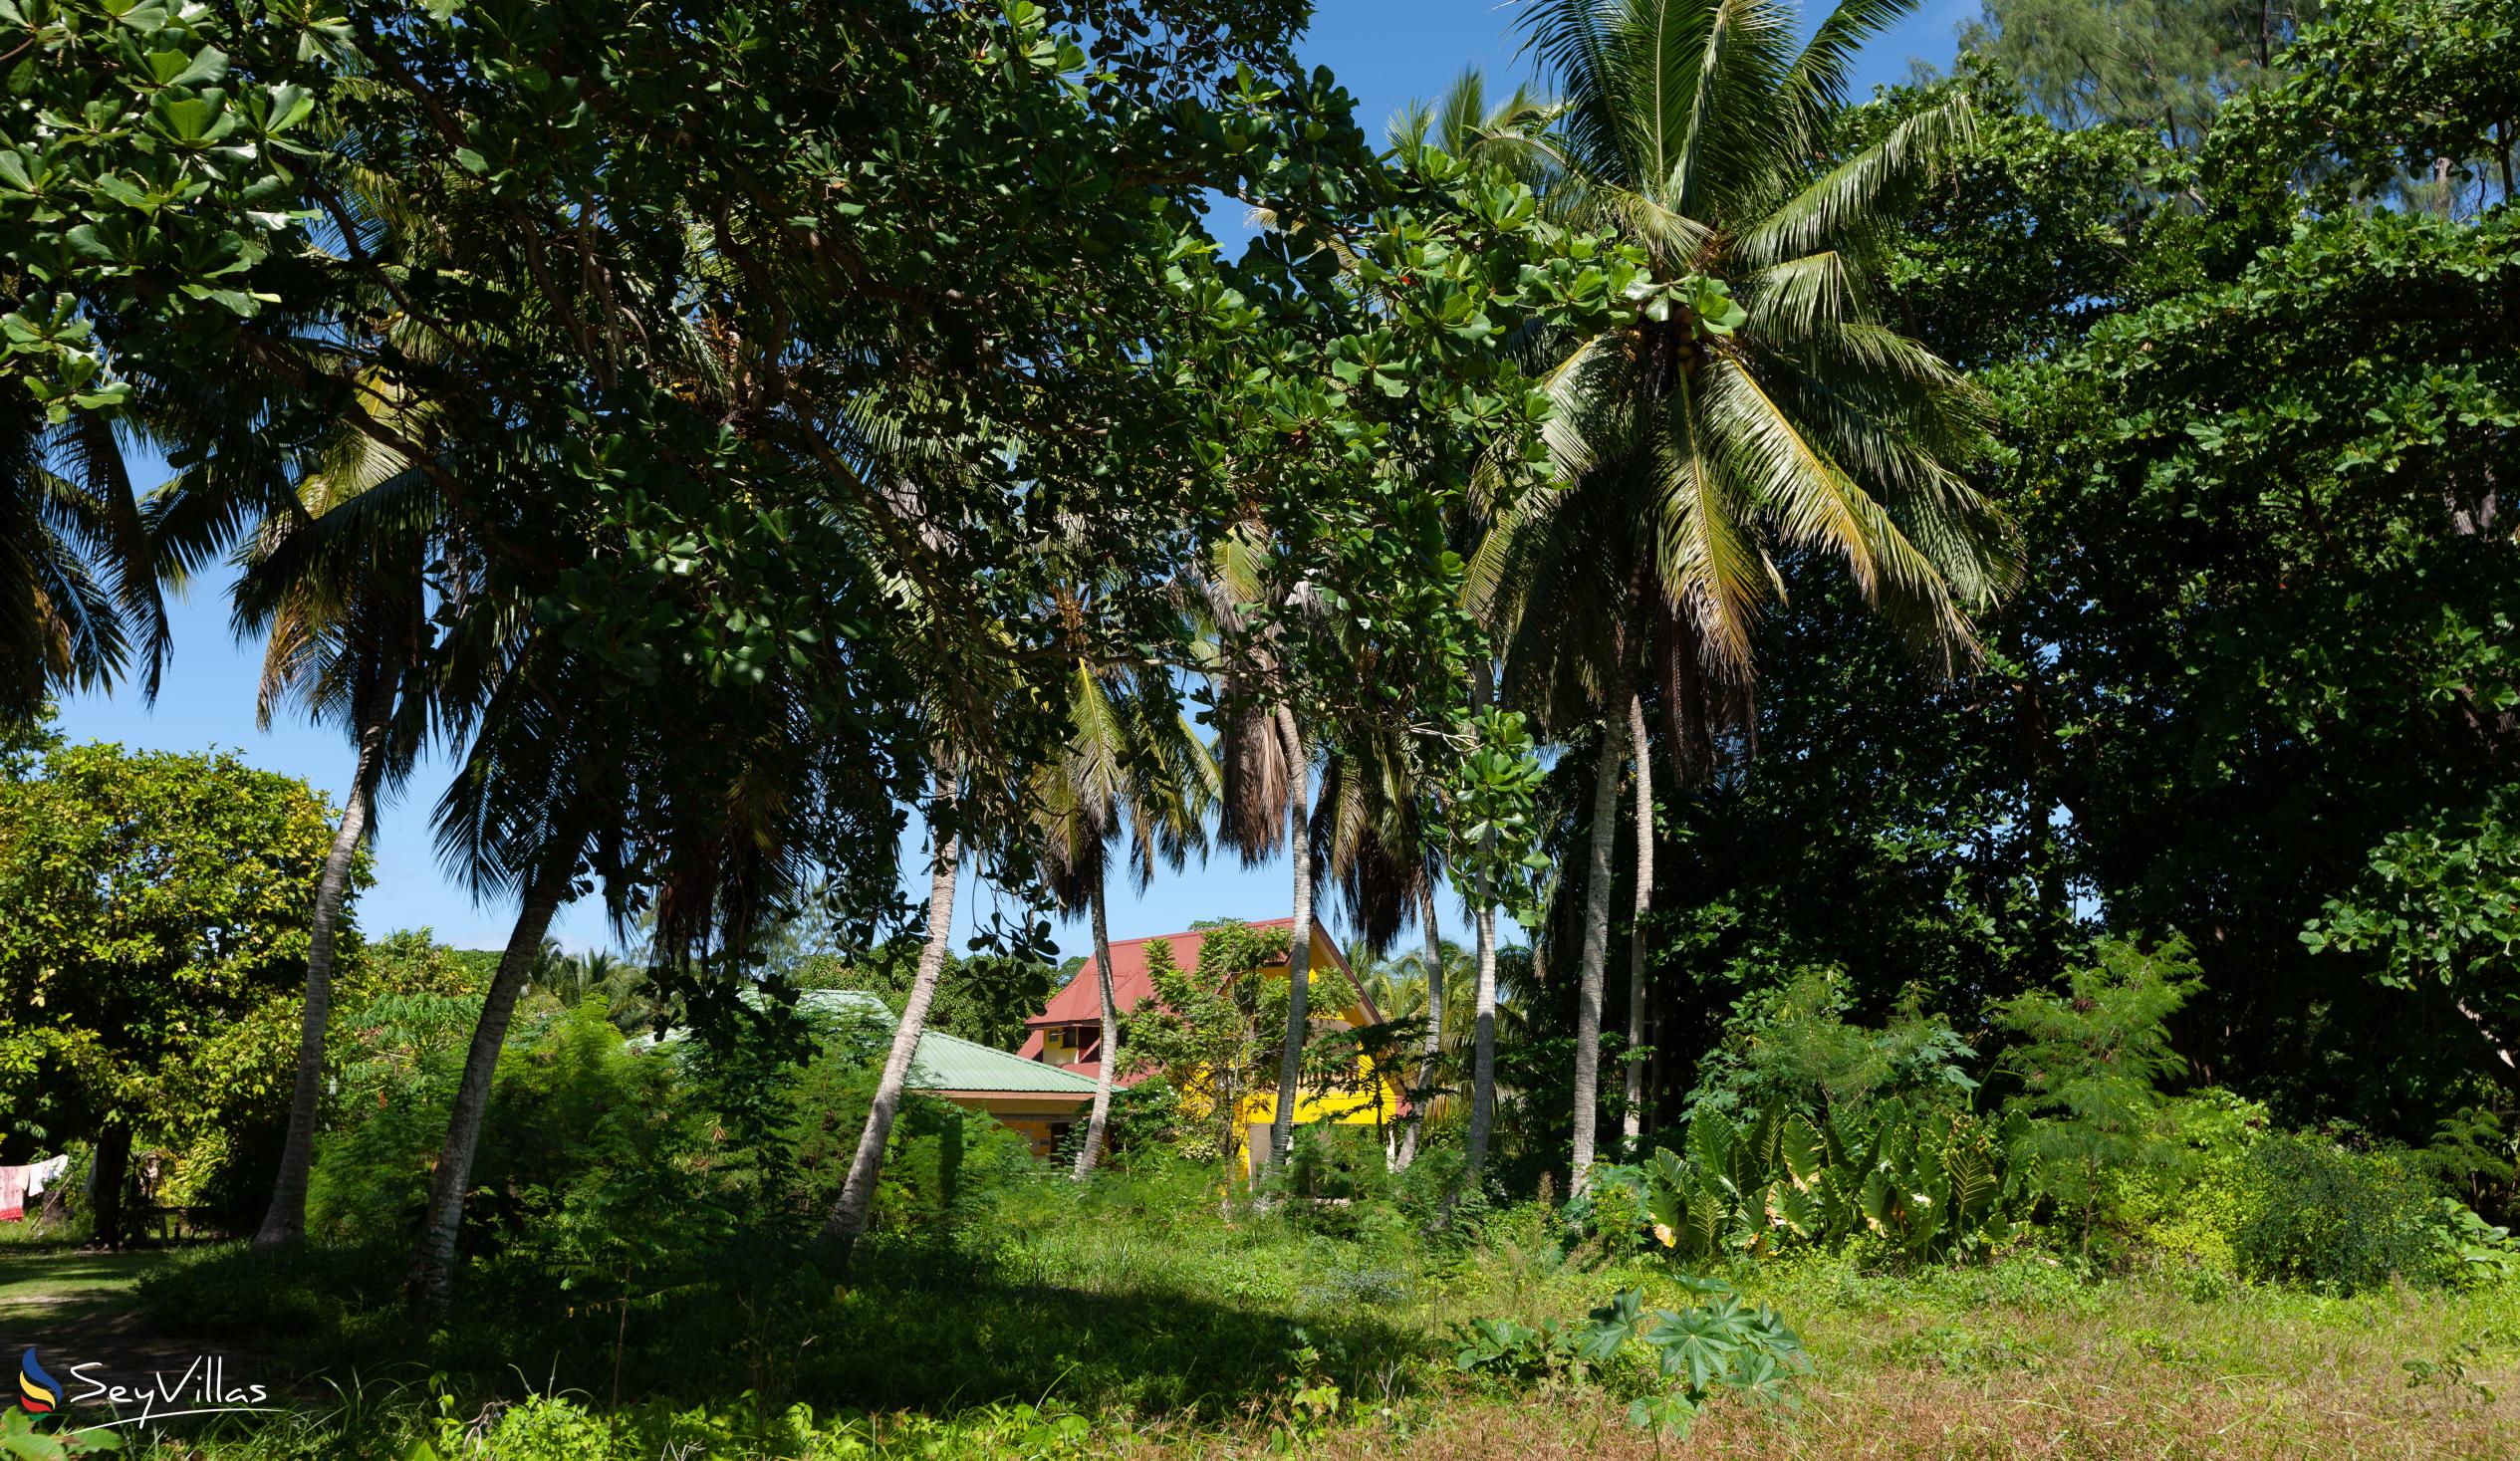 Foto 34: Coco de Mahi - Location - La Digue (Seychelles)